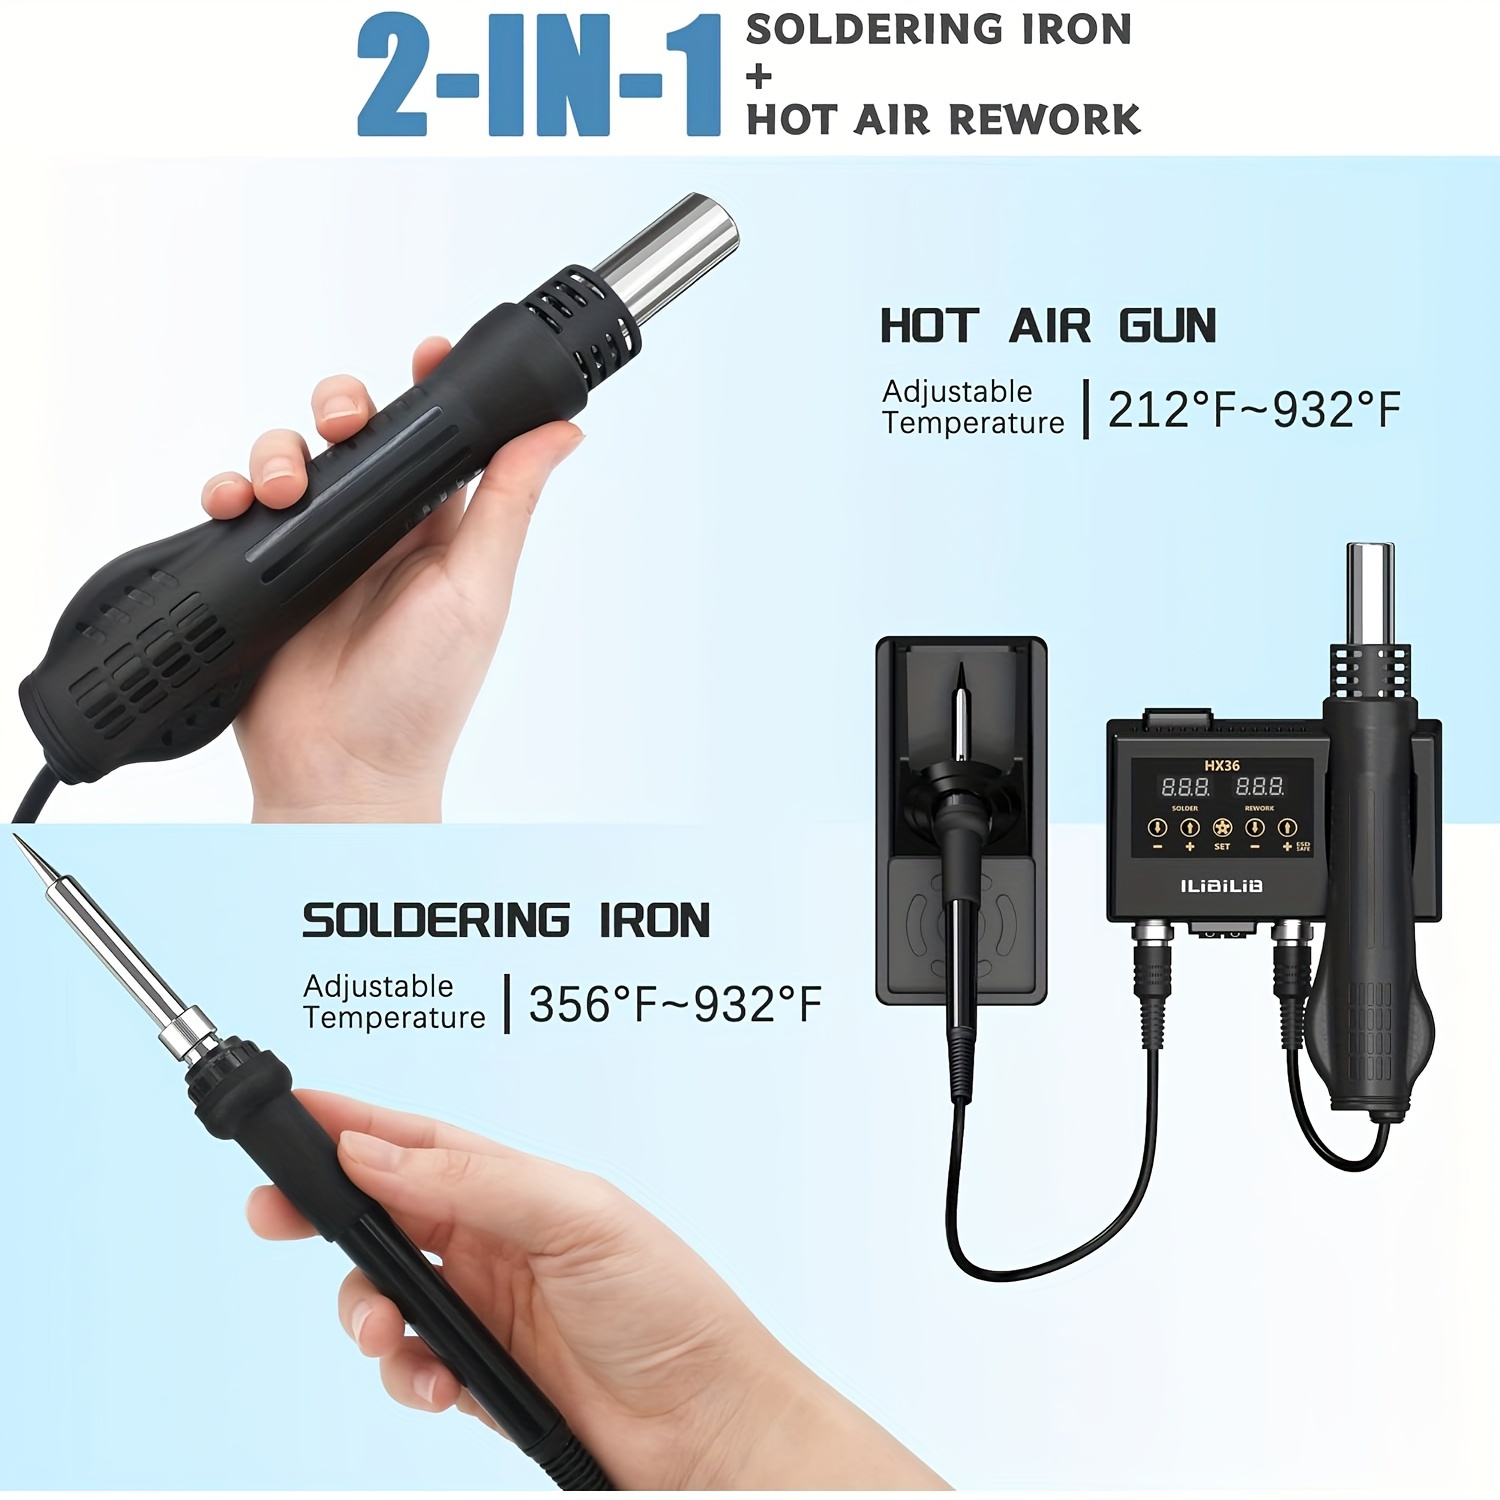 Handheld Digital Hot Air Rework Gun, Hot Air Rework Gun